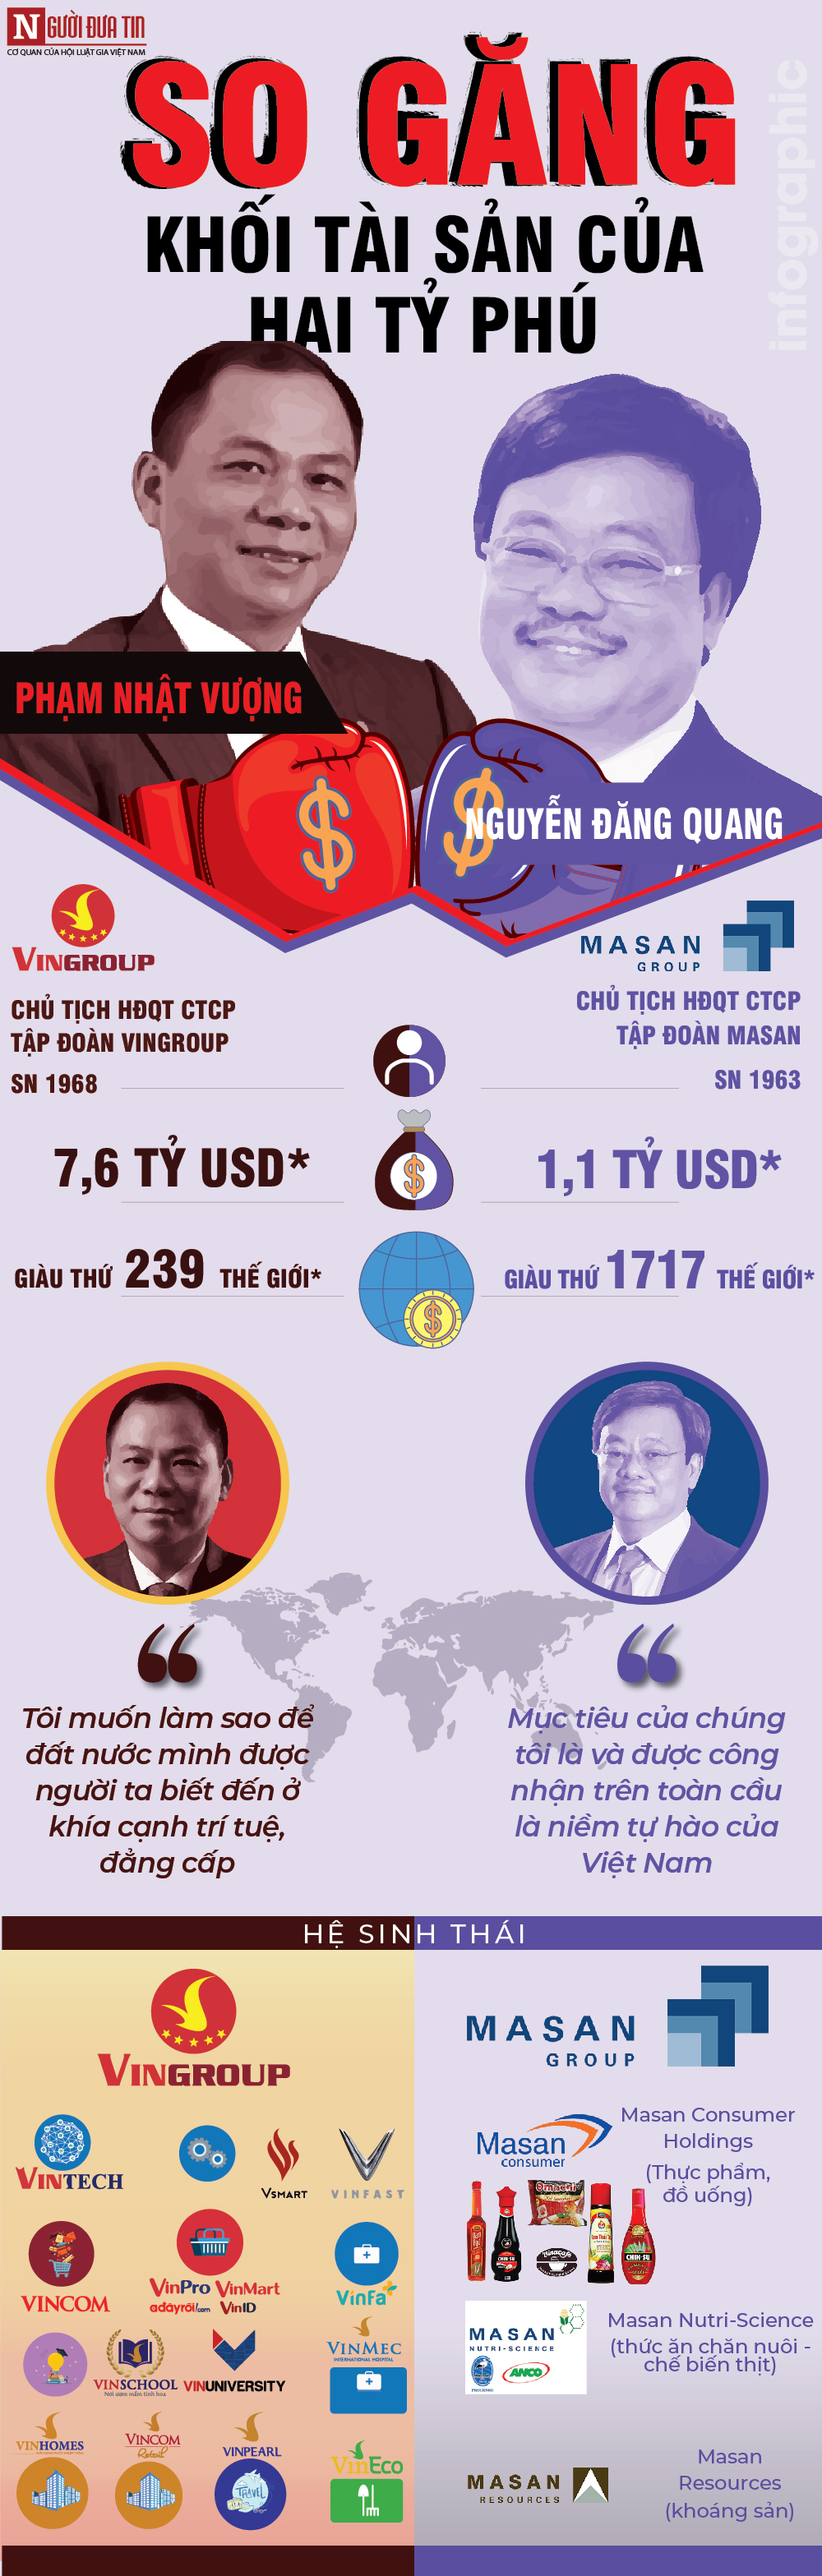 [Info] So găng khối tài sản của hai tỷ phú Vingroup Phạm Nhật Vượng và tỷ phú Masan Nguyễn Đăng Quang - 1